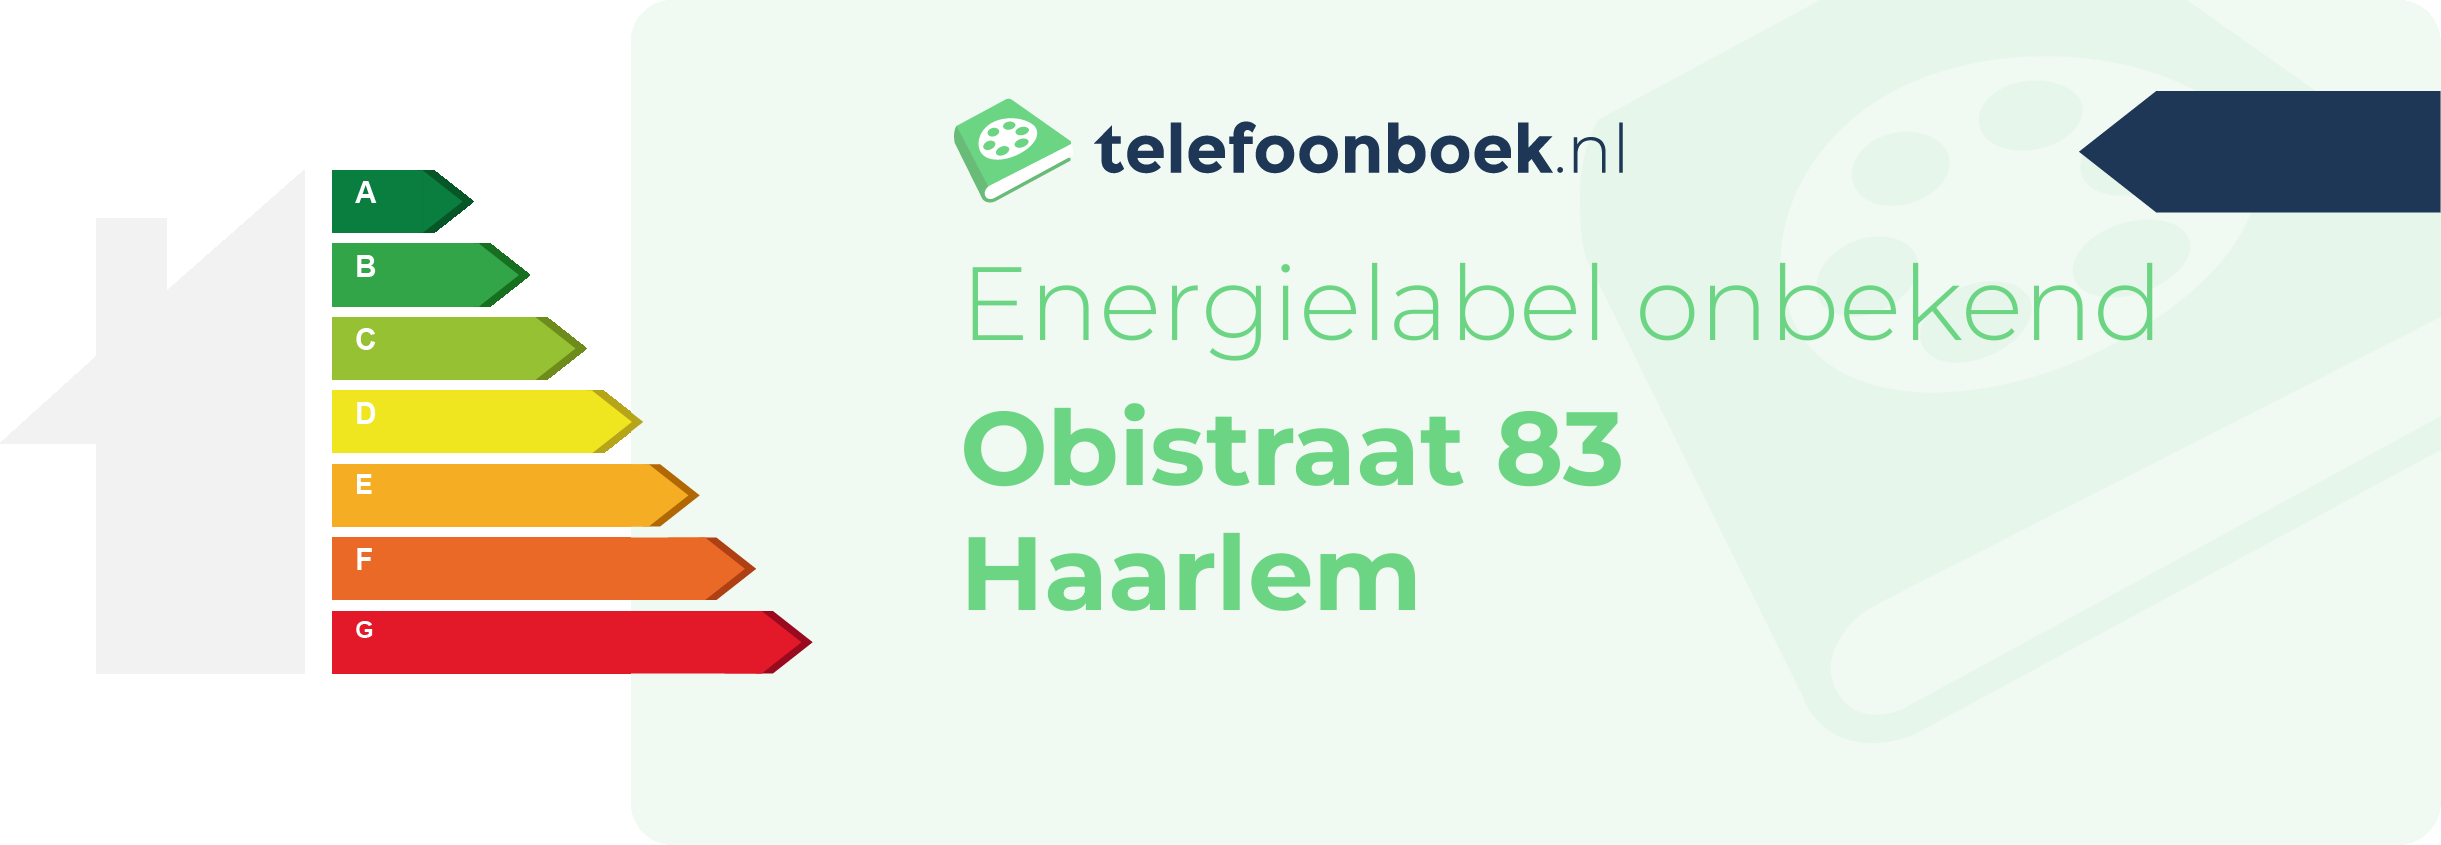 Energielabel Obistraat 83 Haarlem